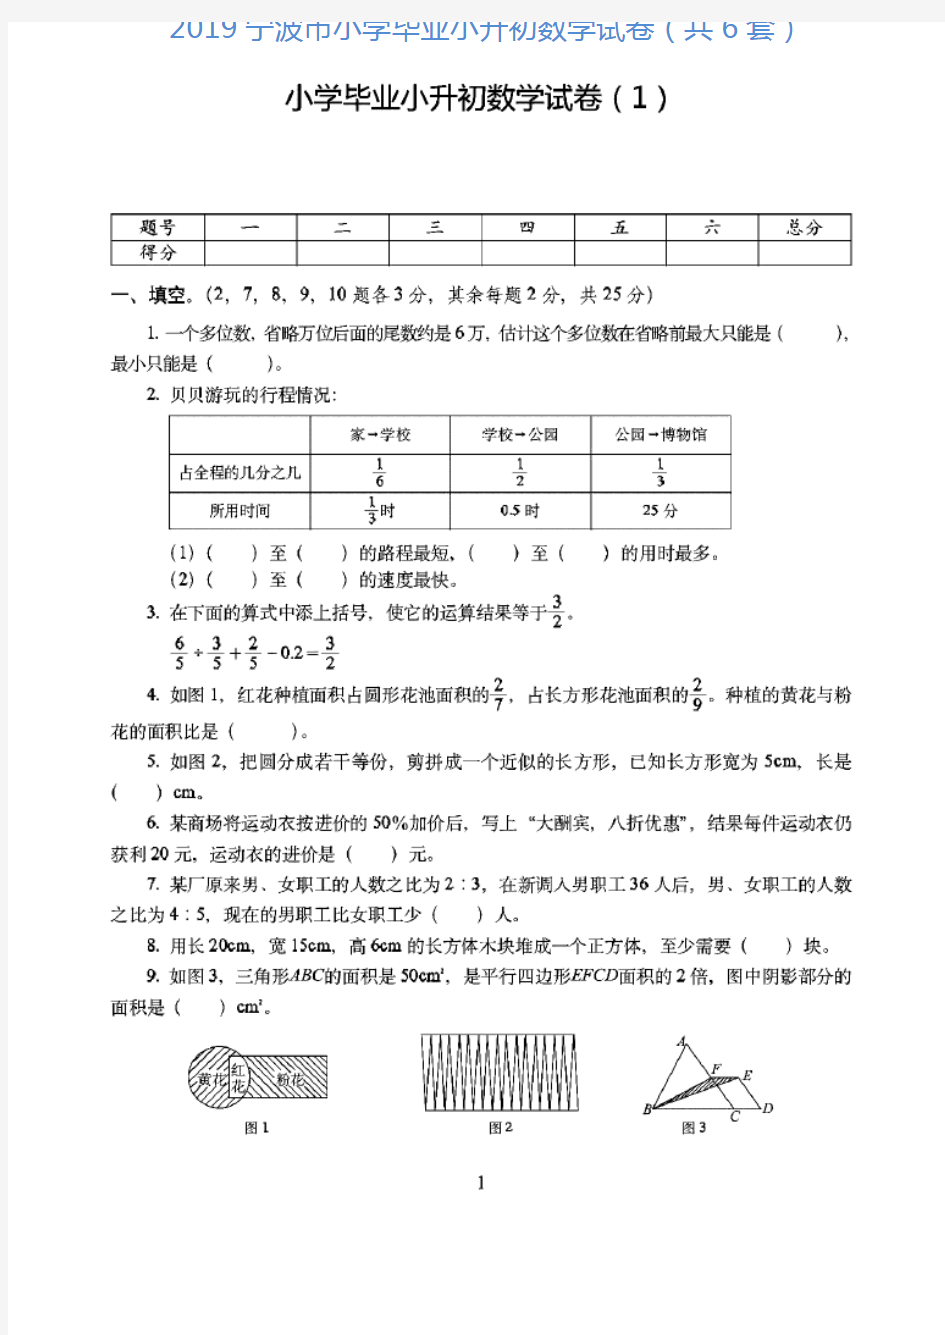 宁波市2019小学毕业小升初数学试卷(共6套)附详细答案